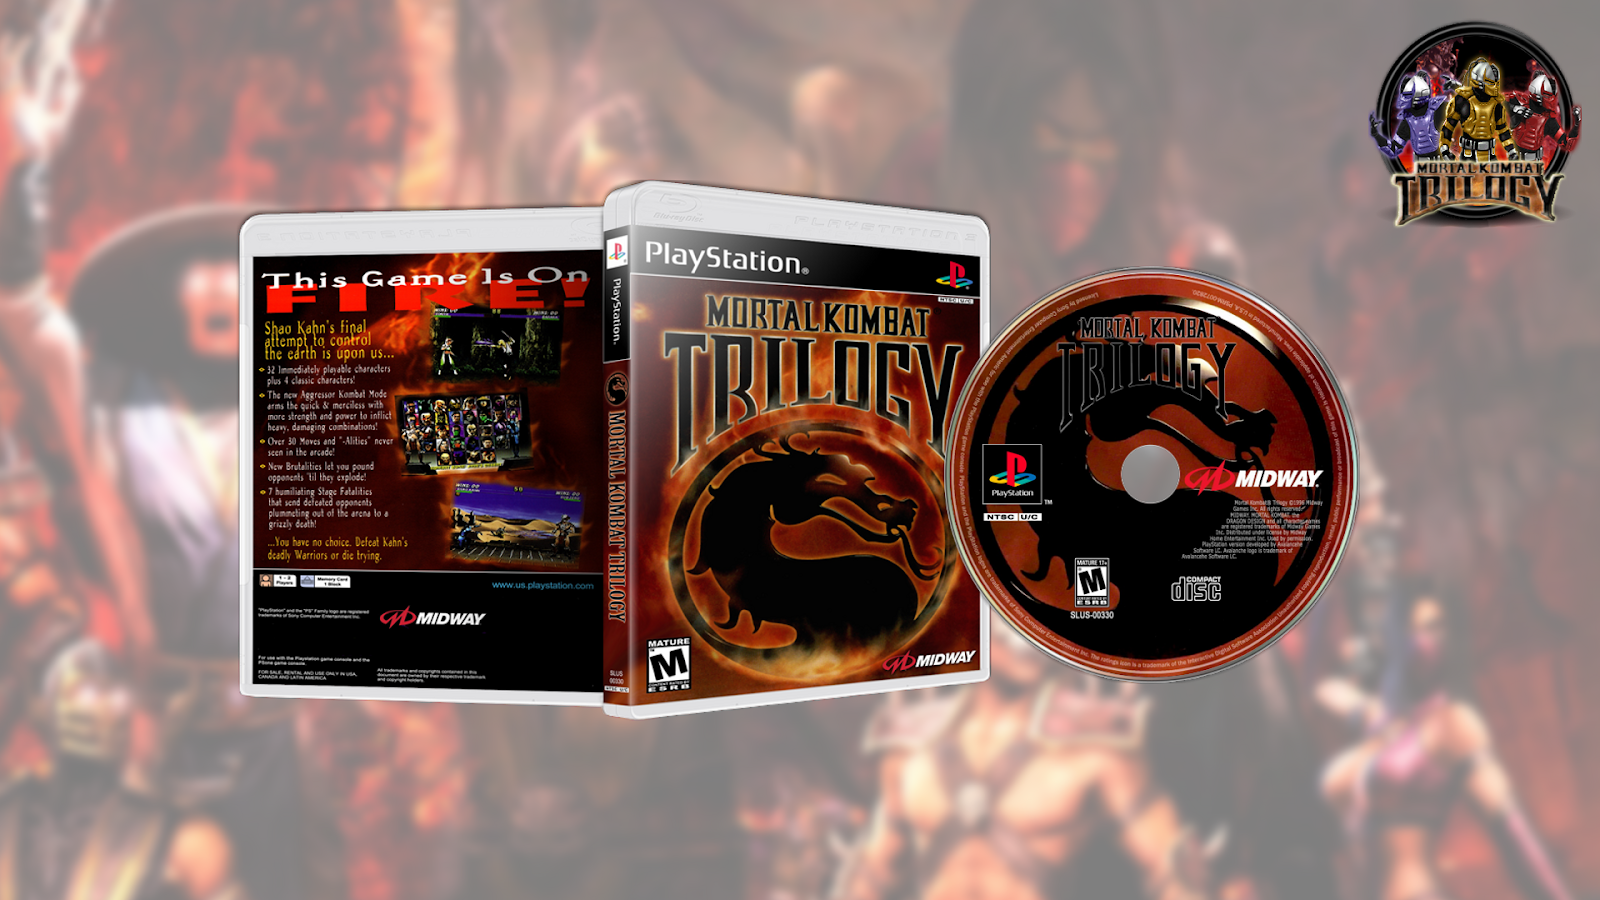 Mortal Kombat Trilogy ps1. Mortal Kombat Trilogy ps1 обложка. Mortal Kombat 3 ps1. Коды мортал комбат трилогия пс1.